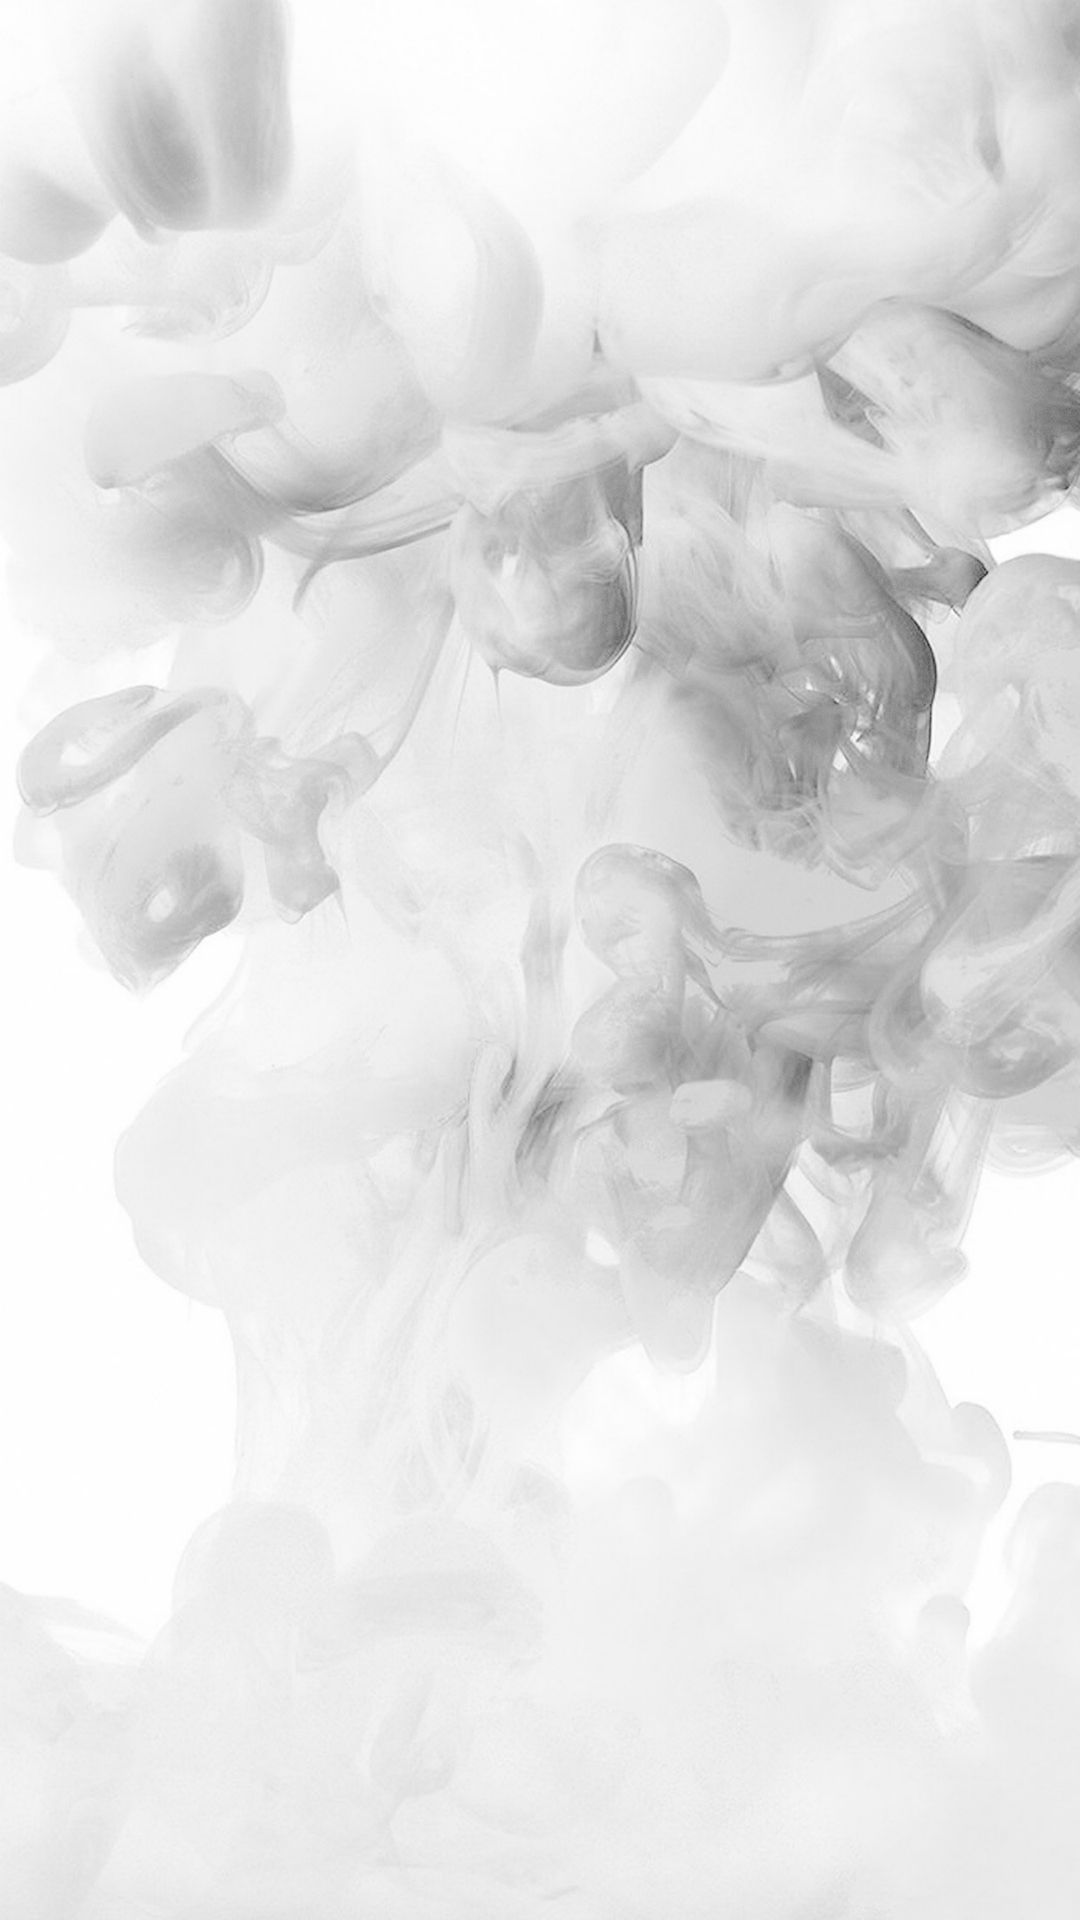 Smoke White Abstract Fog Art Illust fondo de pantalla para iPhone 6 |  niebla en 2019. Imágen blancos. de Blancos, Colores - Todo fondos